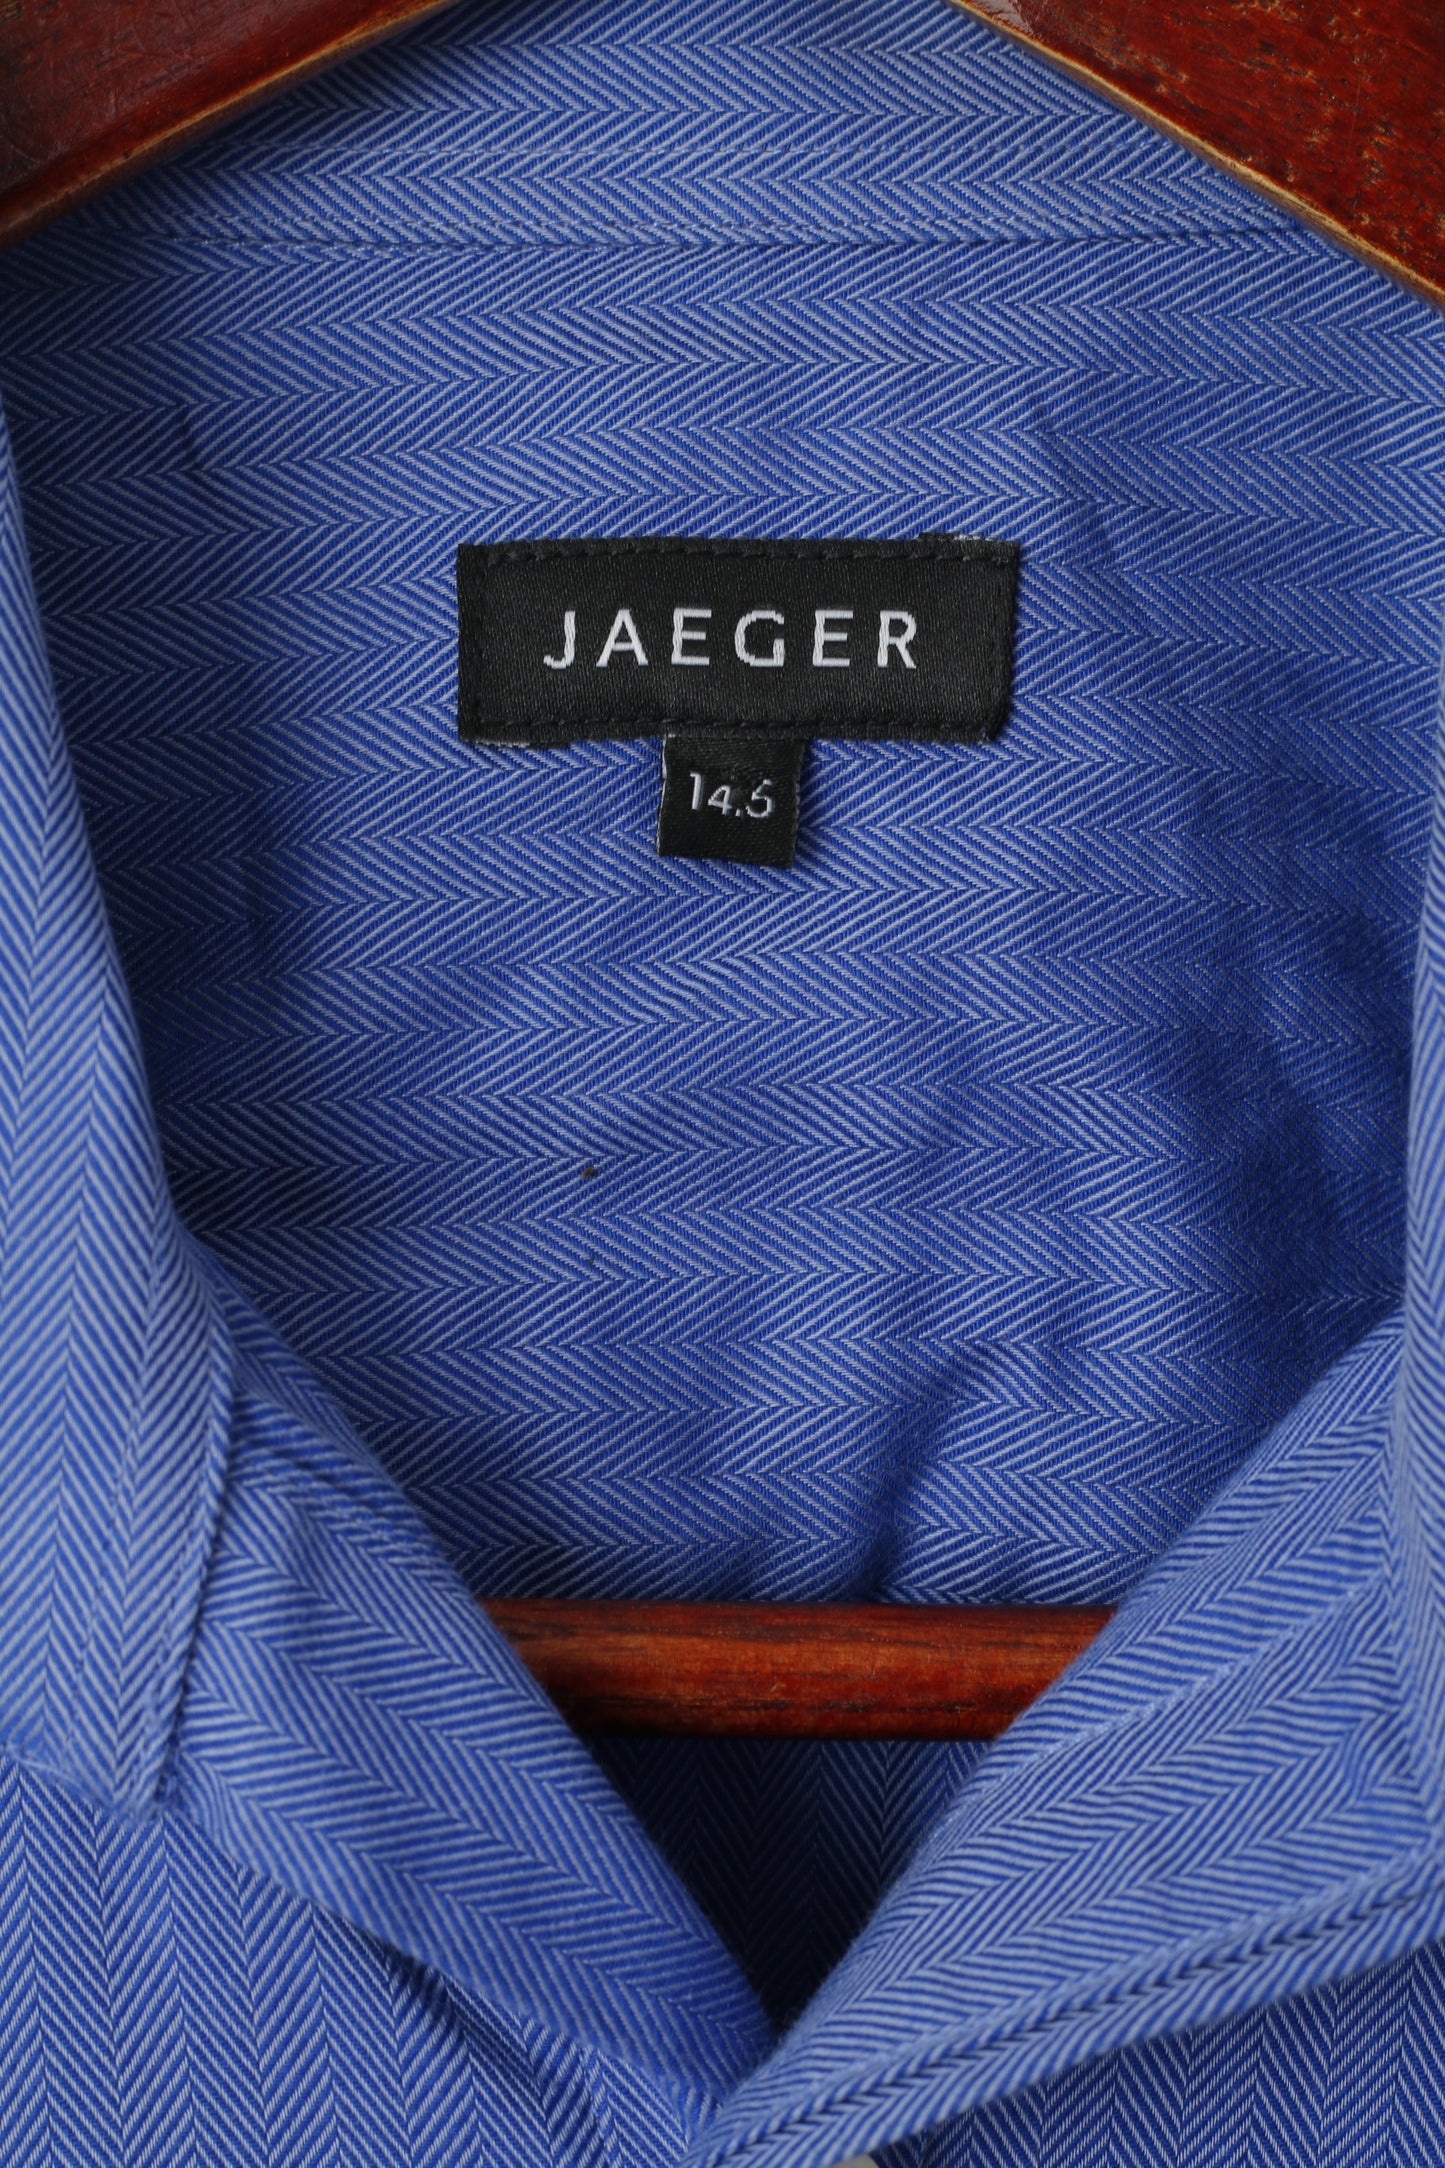 Jaeger Uomo 14.5 S Camicia casual Blu a righe in cotone a maniche lunghe Gemelli Top elegante